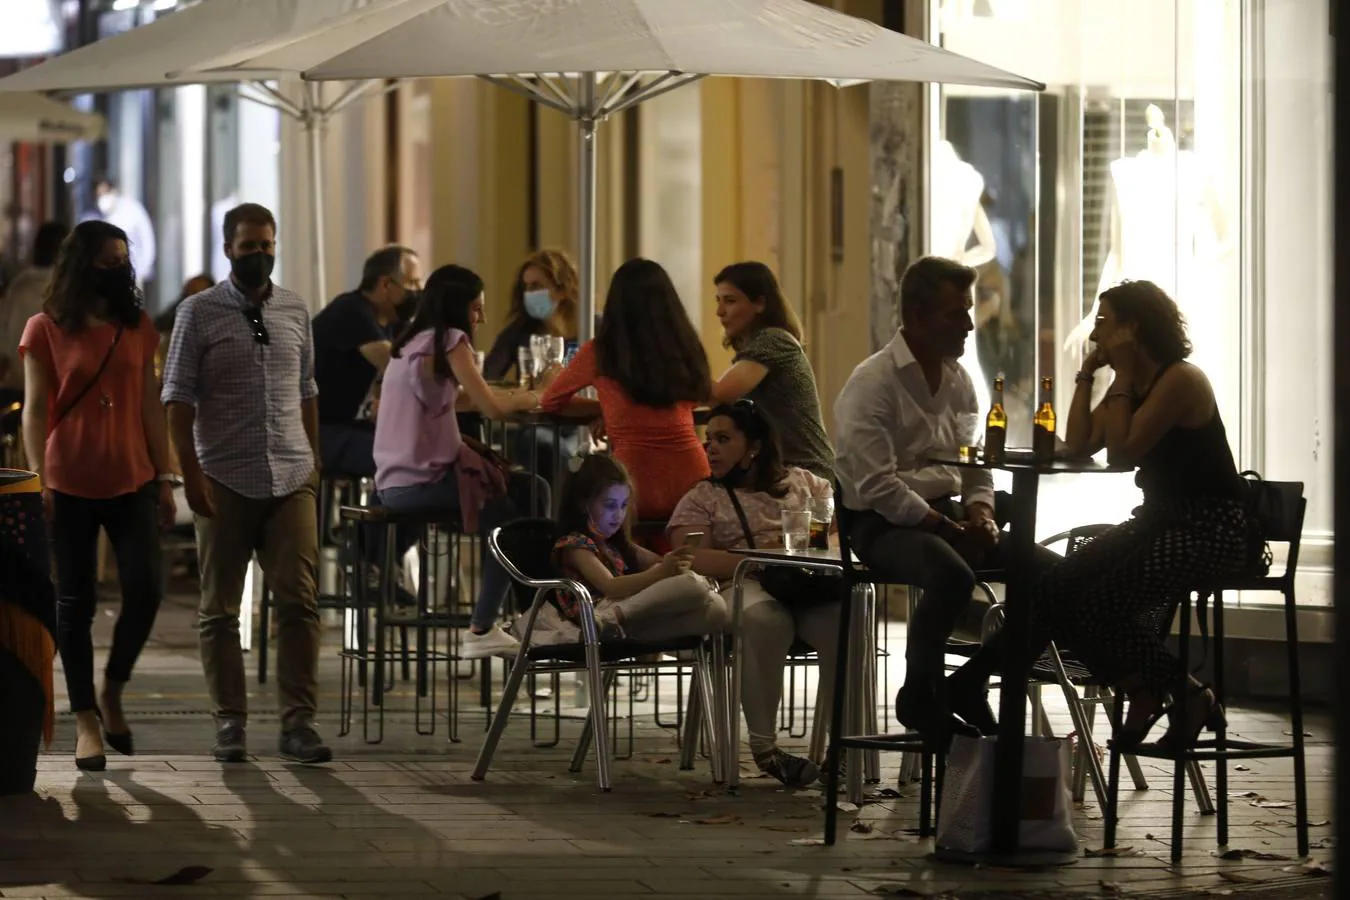 La primera noche sin toque de queda en Córdoba, en imágenes